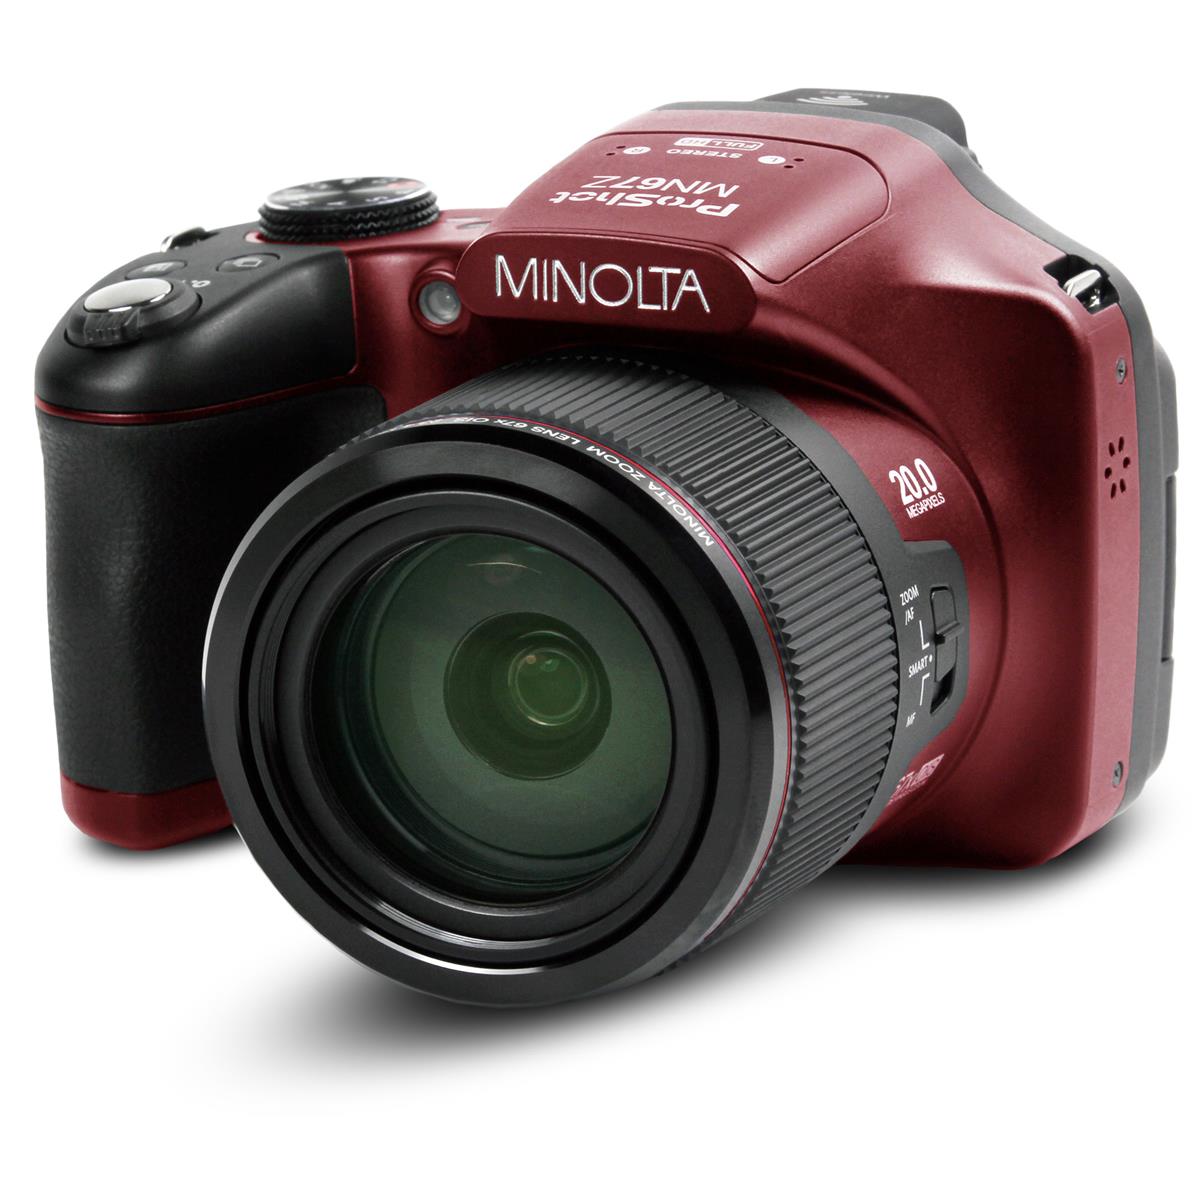 Minolta MN67Z 20MP Full HD Wi-Fi Bridge Camera с 67-кратным оптическим зумом, красный